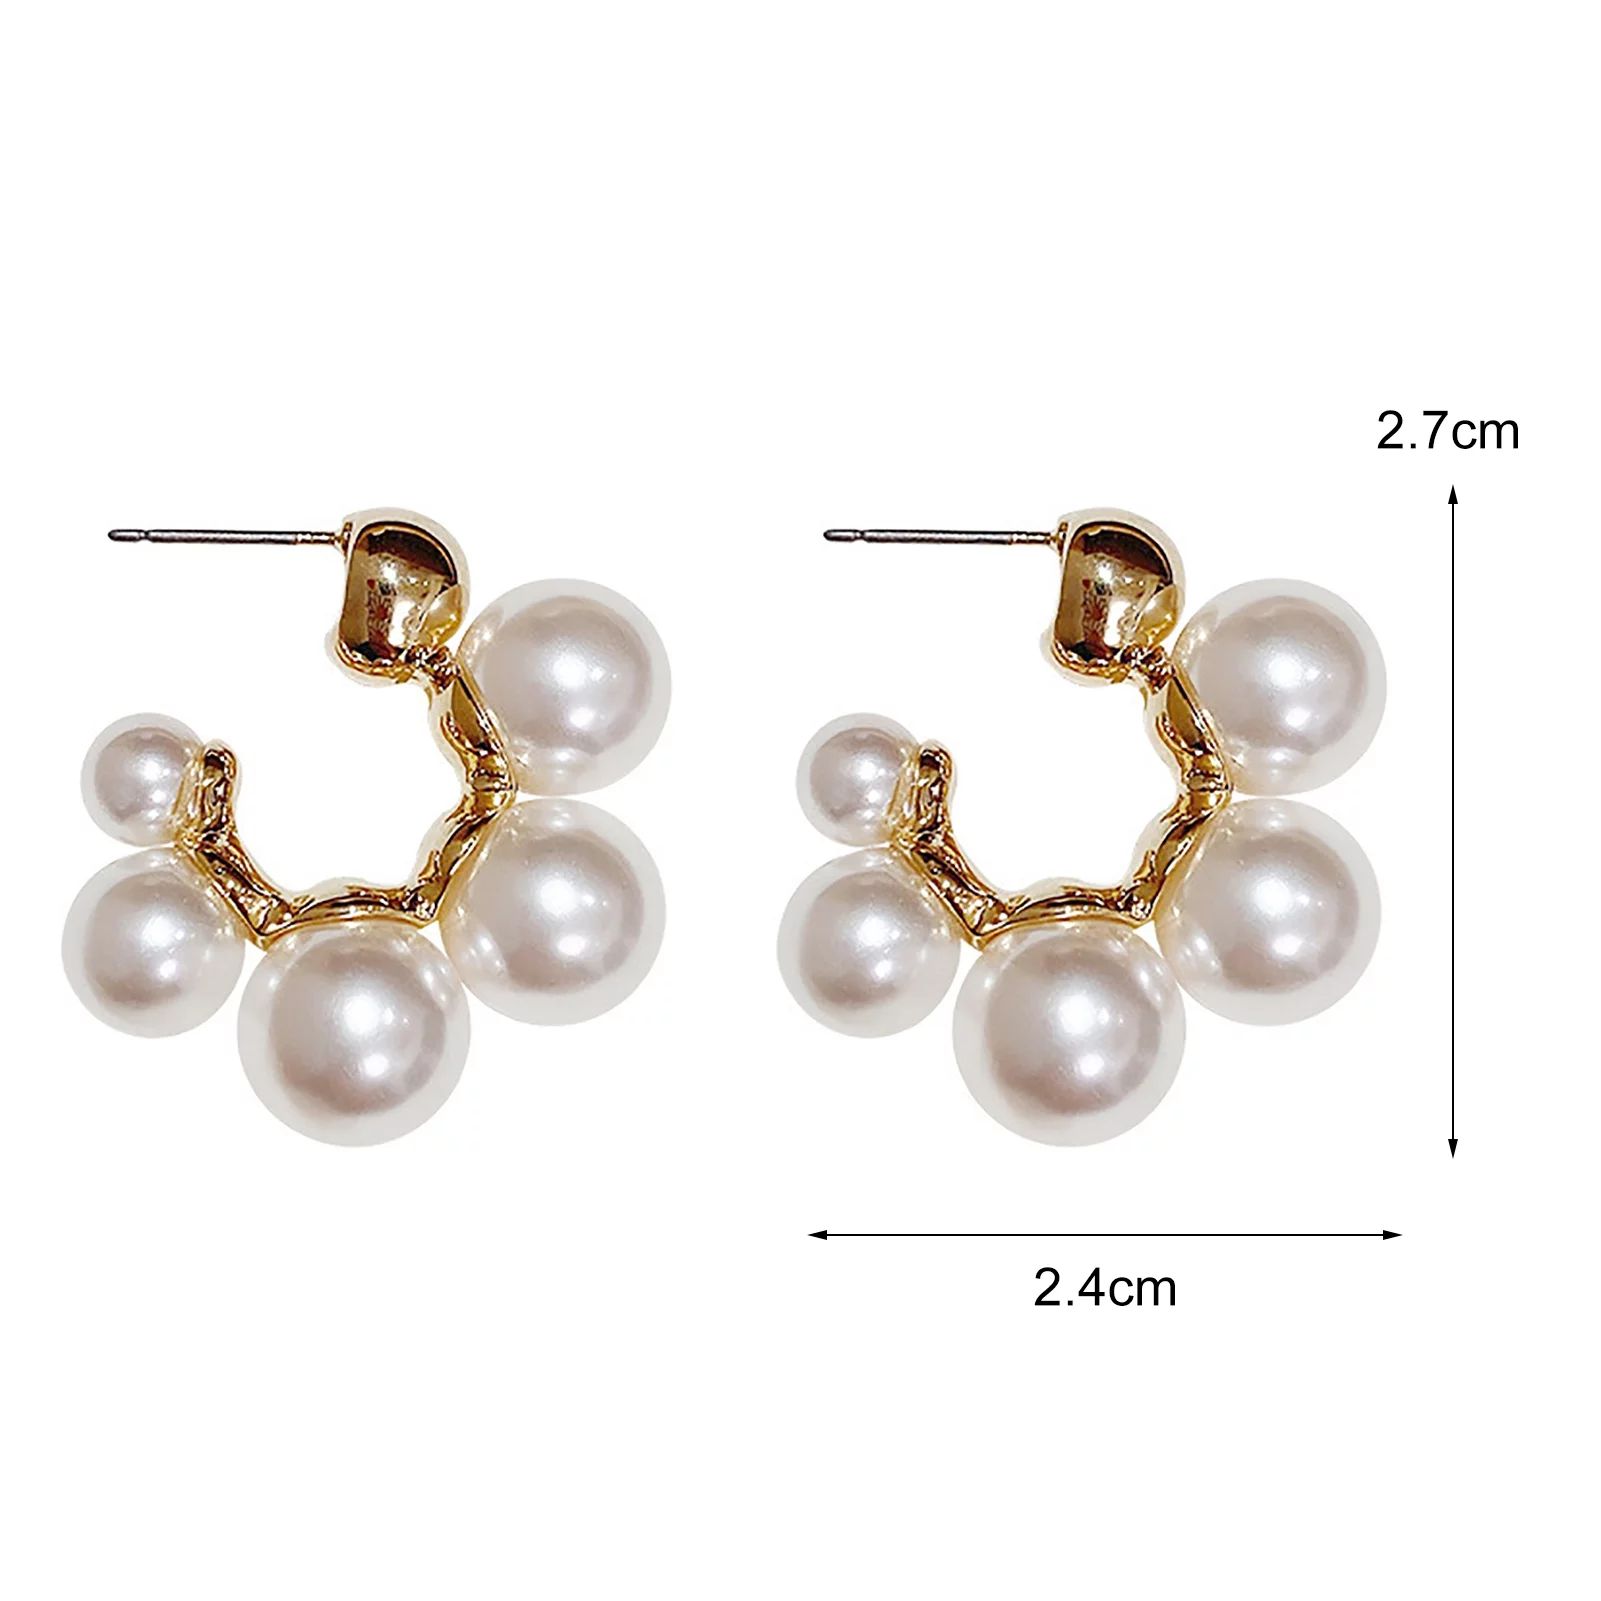 Jiaroswwei Faux Pearl Women Earrings Golden Alloy Simple Elegant Stud Earrings Fashion Jewelry - ... | Walmart (US)